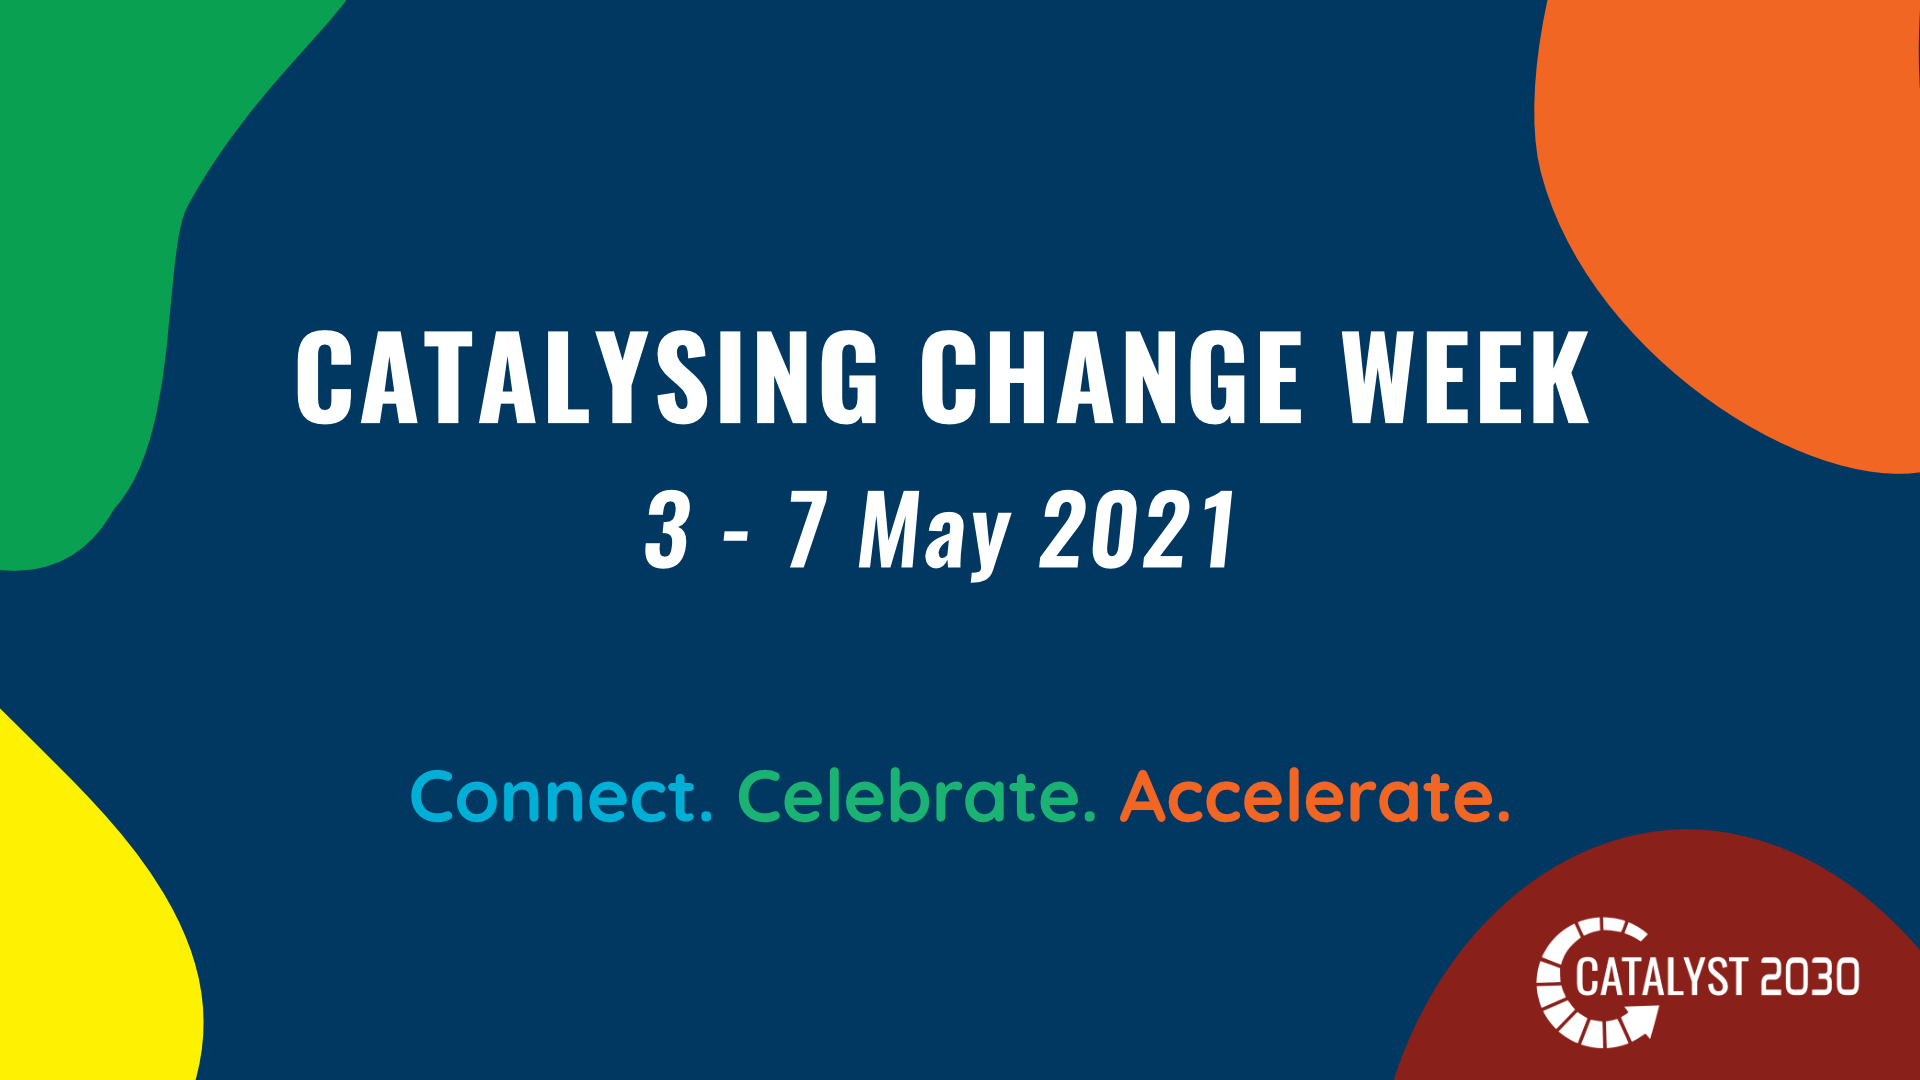 Catalysing Change Week 2021